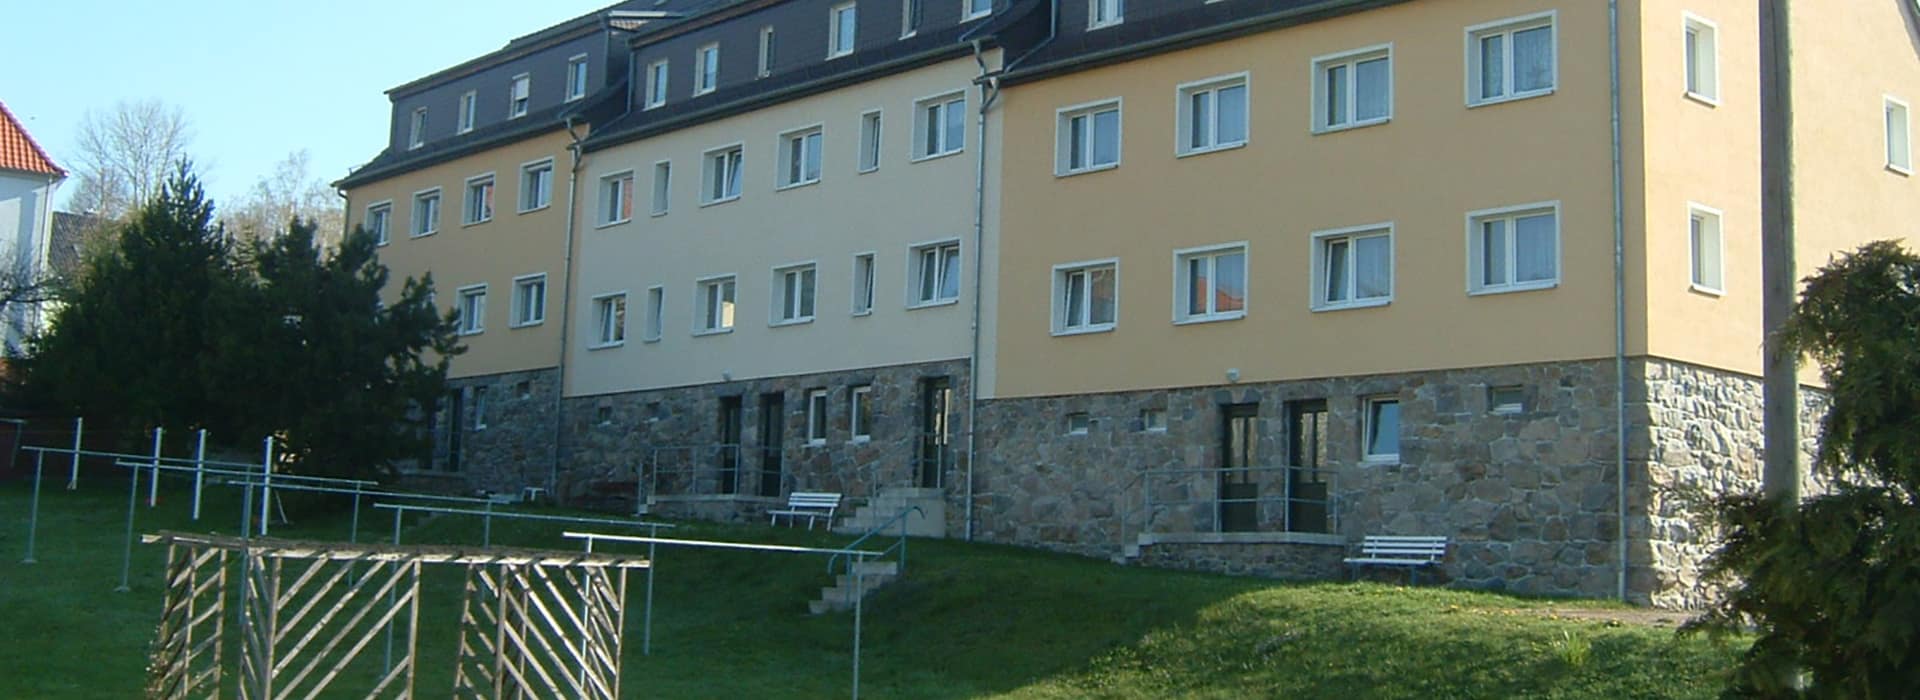 Hinterhof von Mehrfamilienhäusern mit Wäschestangen auf Grünfläche sowie Sonnenschein